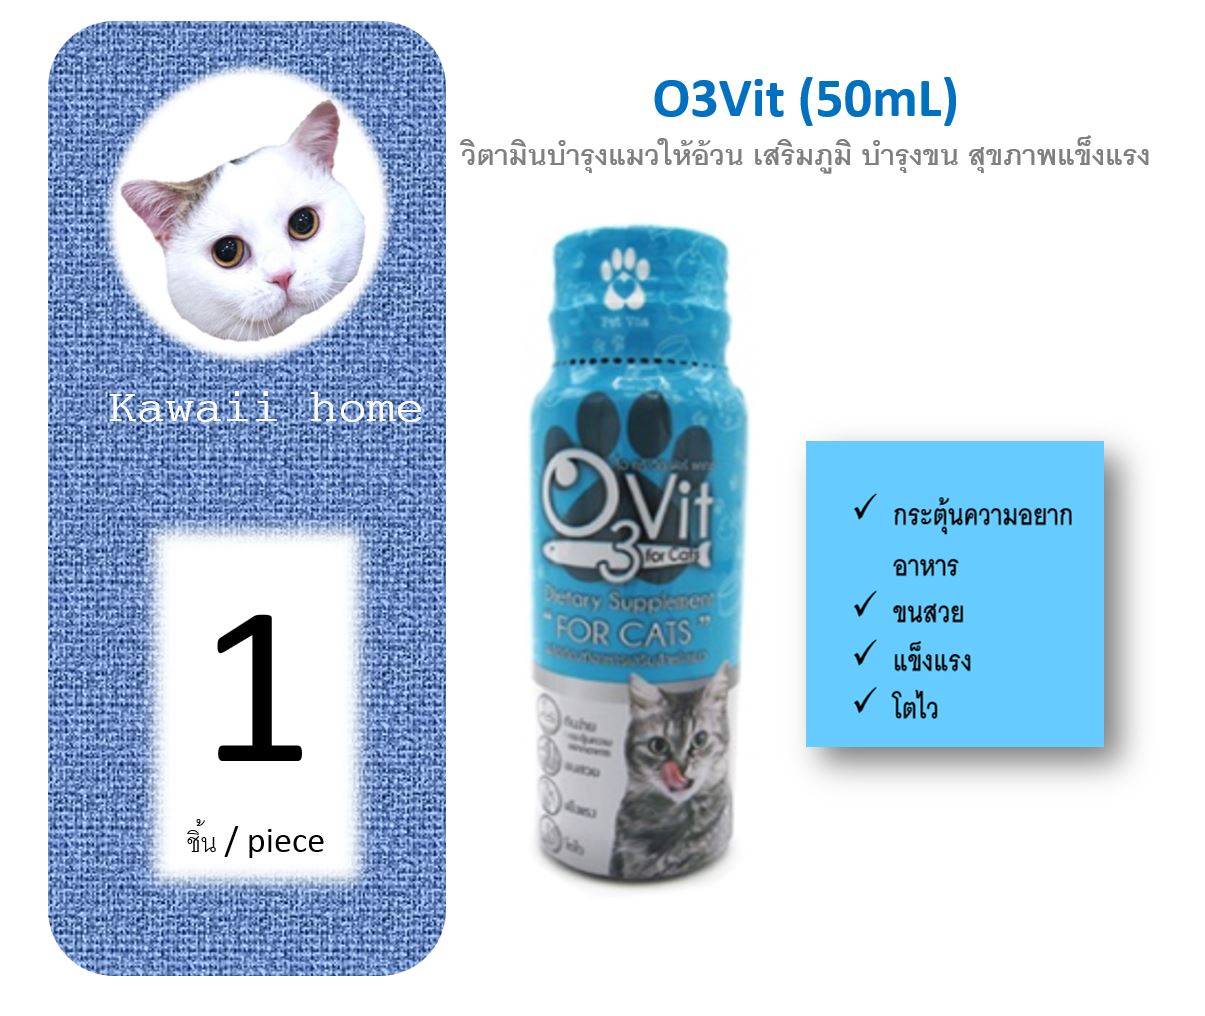 (AA01) O3Vit วิตามินบำรุง เสริมภูมิคุ้มกัน บำรุงขน สำหรับแมว (จำนวน 1 ขวด) หมดอายุ 05/2022